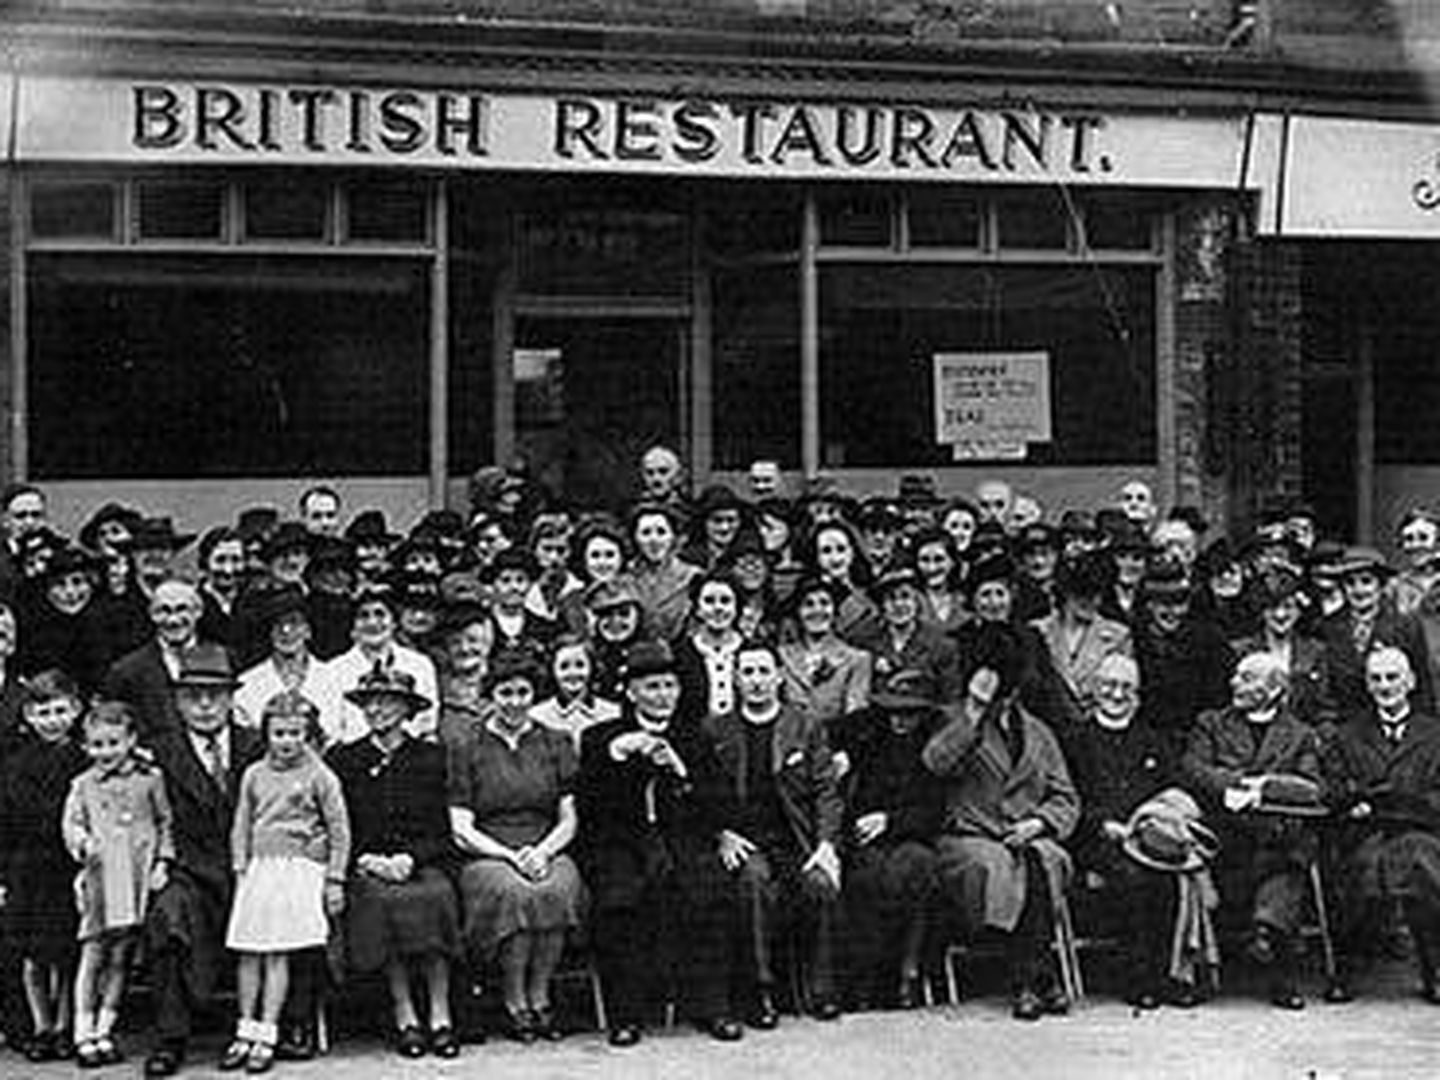 British Restaurants